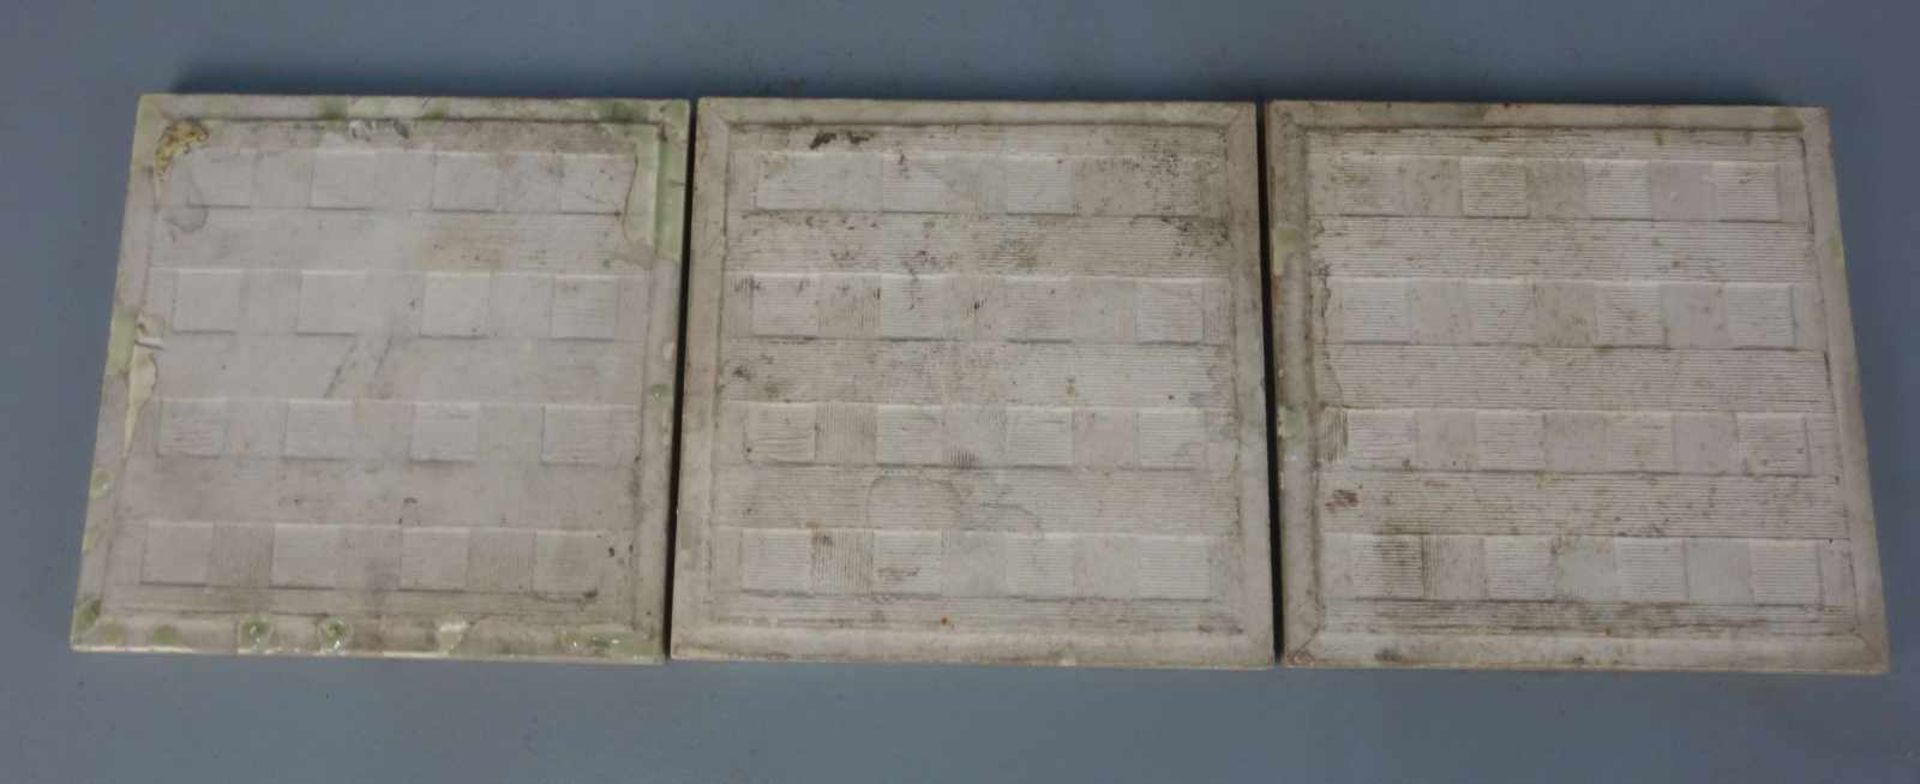 3 JUGENDSTILFLIESEN / art nouveau tiles, heller Scherben, um 1900, dreifarbig glasiert mit - Image 7 of 7